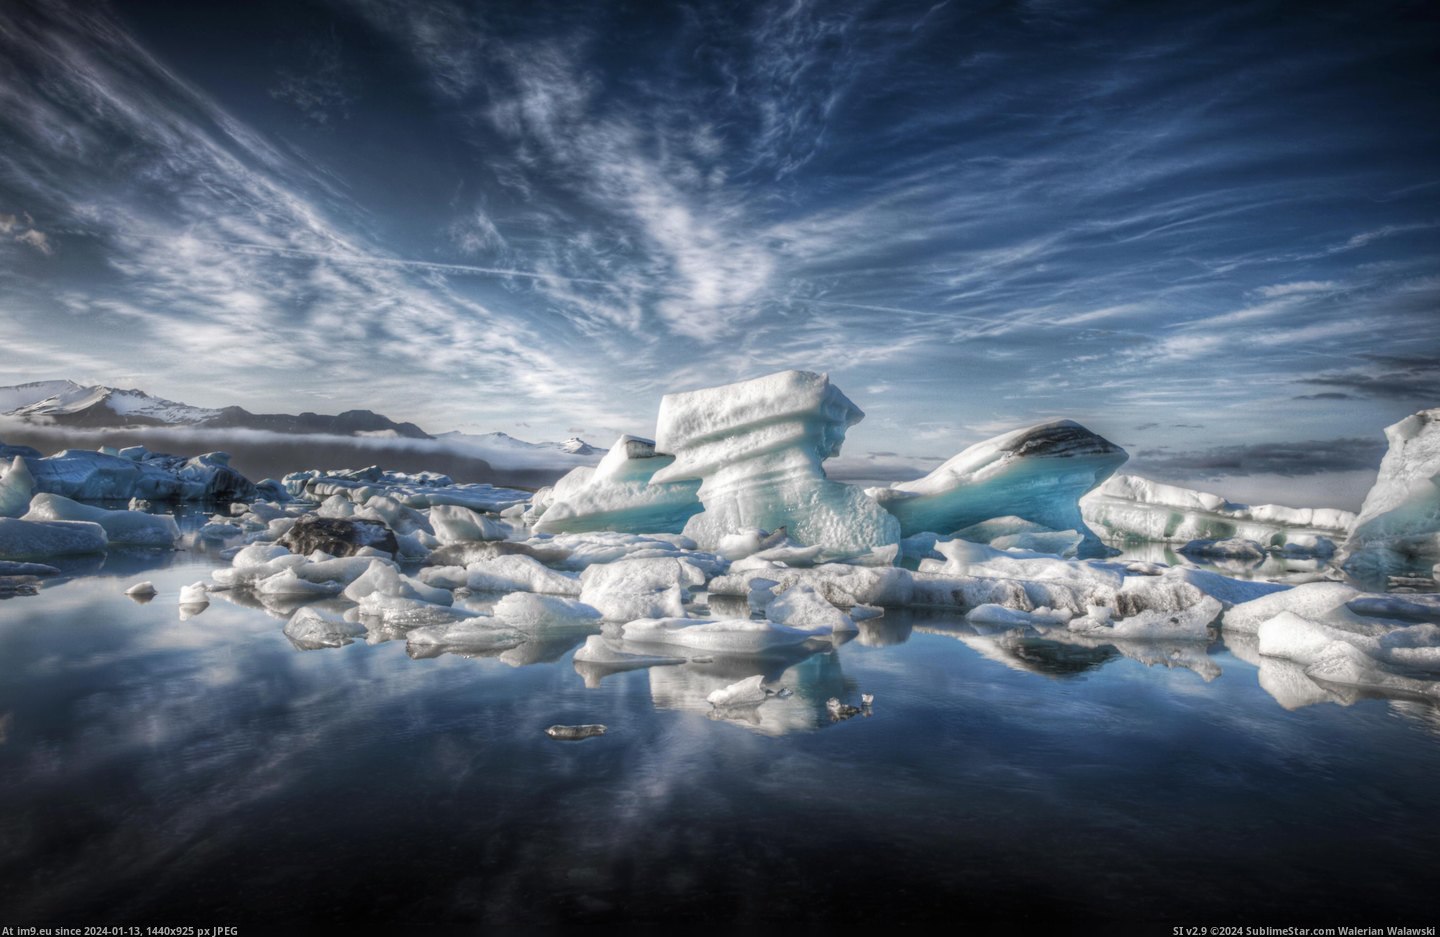 #Iceland #Glacial #Lagoon [Earthporn] Jökulsárlón Glacial Lagoon, Iceland [4147x2676] Pic. (Bild von album My r/EARTHPORN favs))